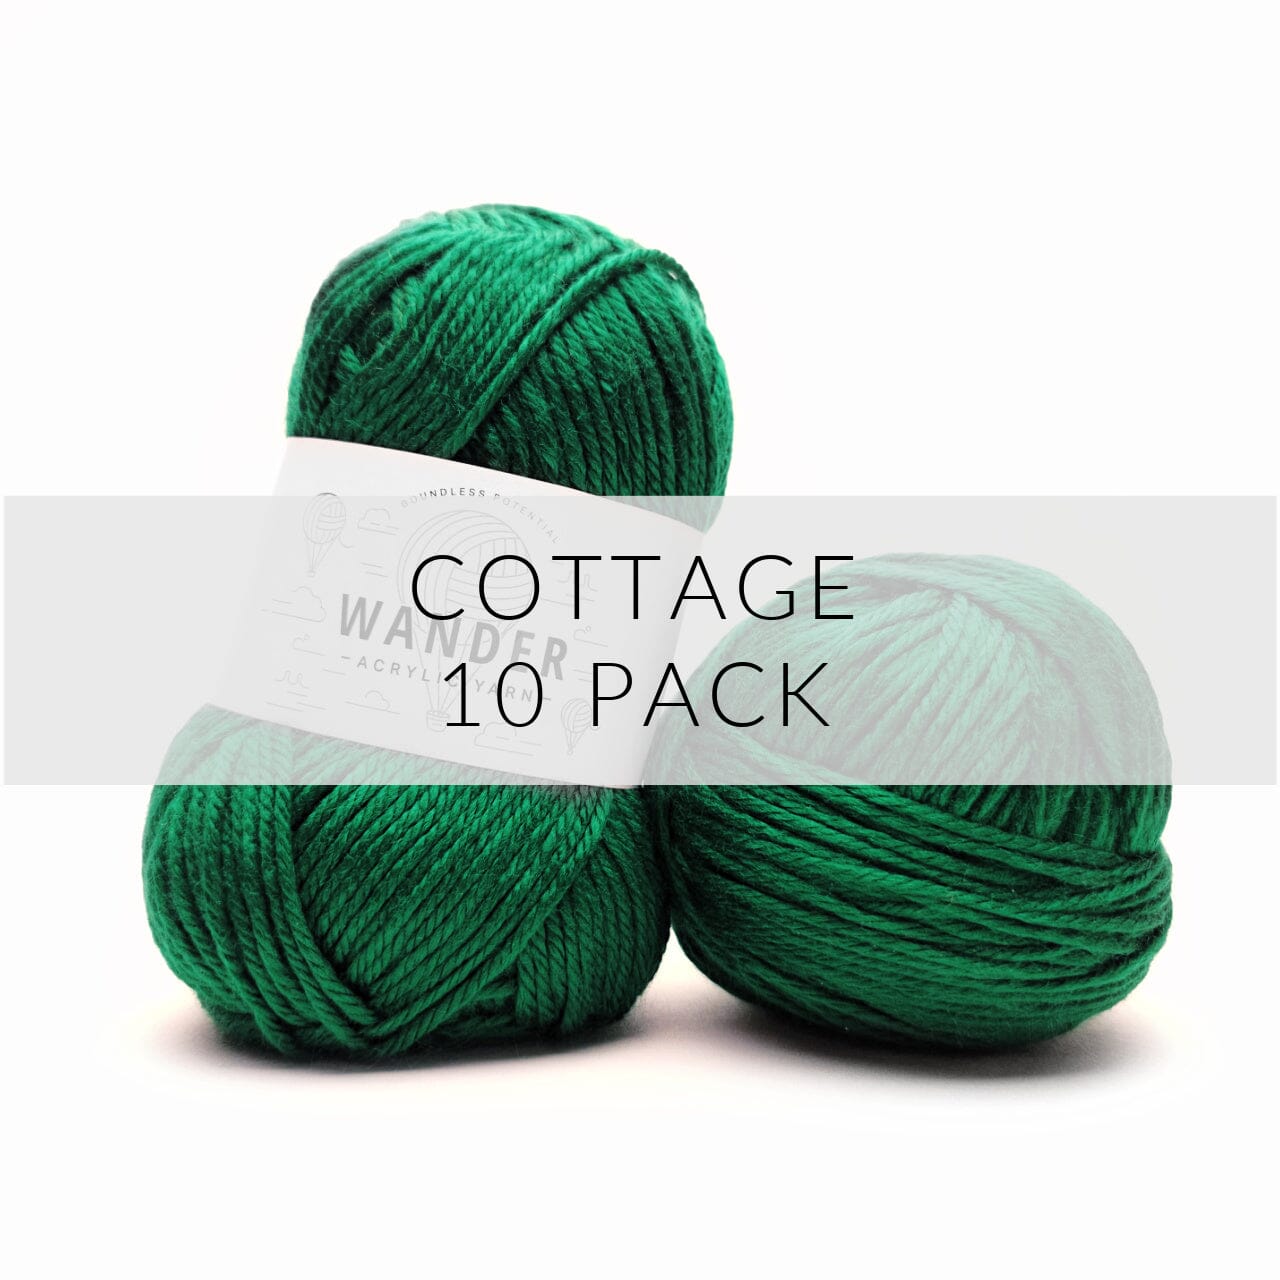 10 Pack Wander Acrylic Yarn Yarn FurlsCrochet Cottage 